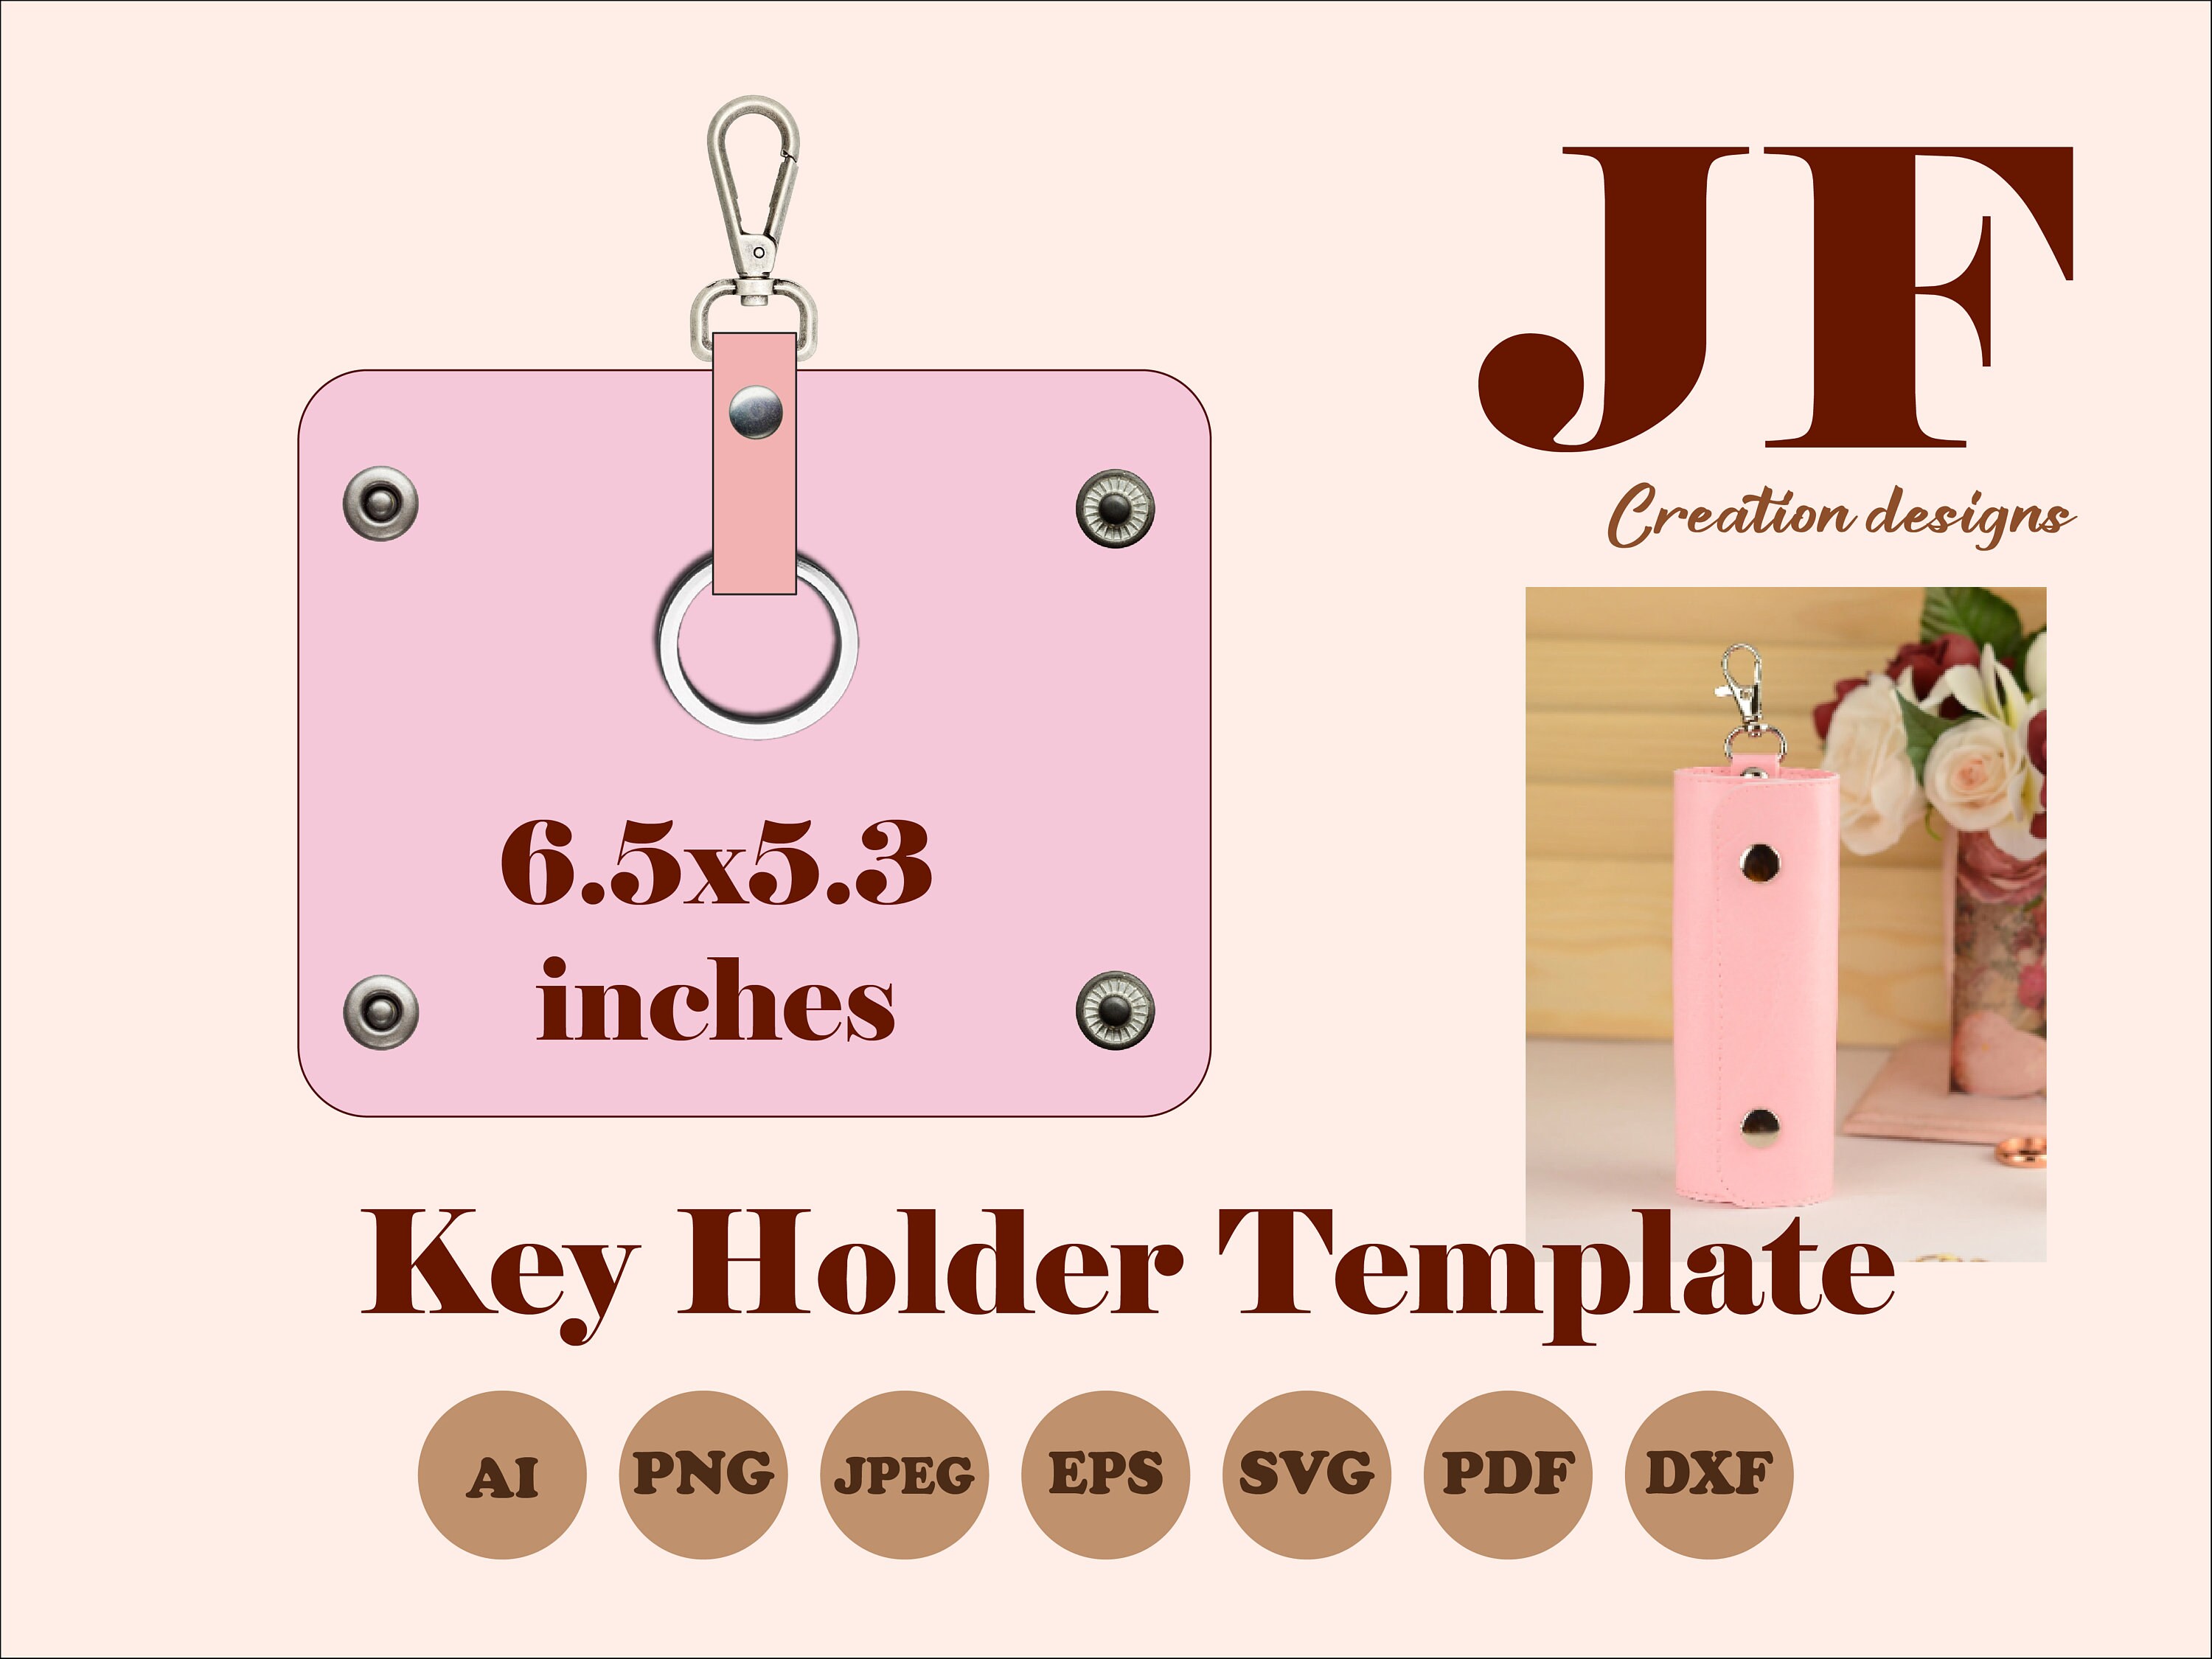 Keychain Holder Display Card SVG, Keyring Holder Dxf, Eps, Png